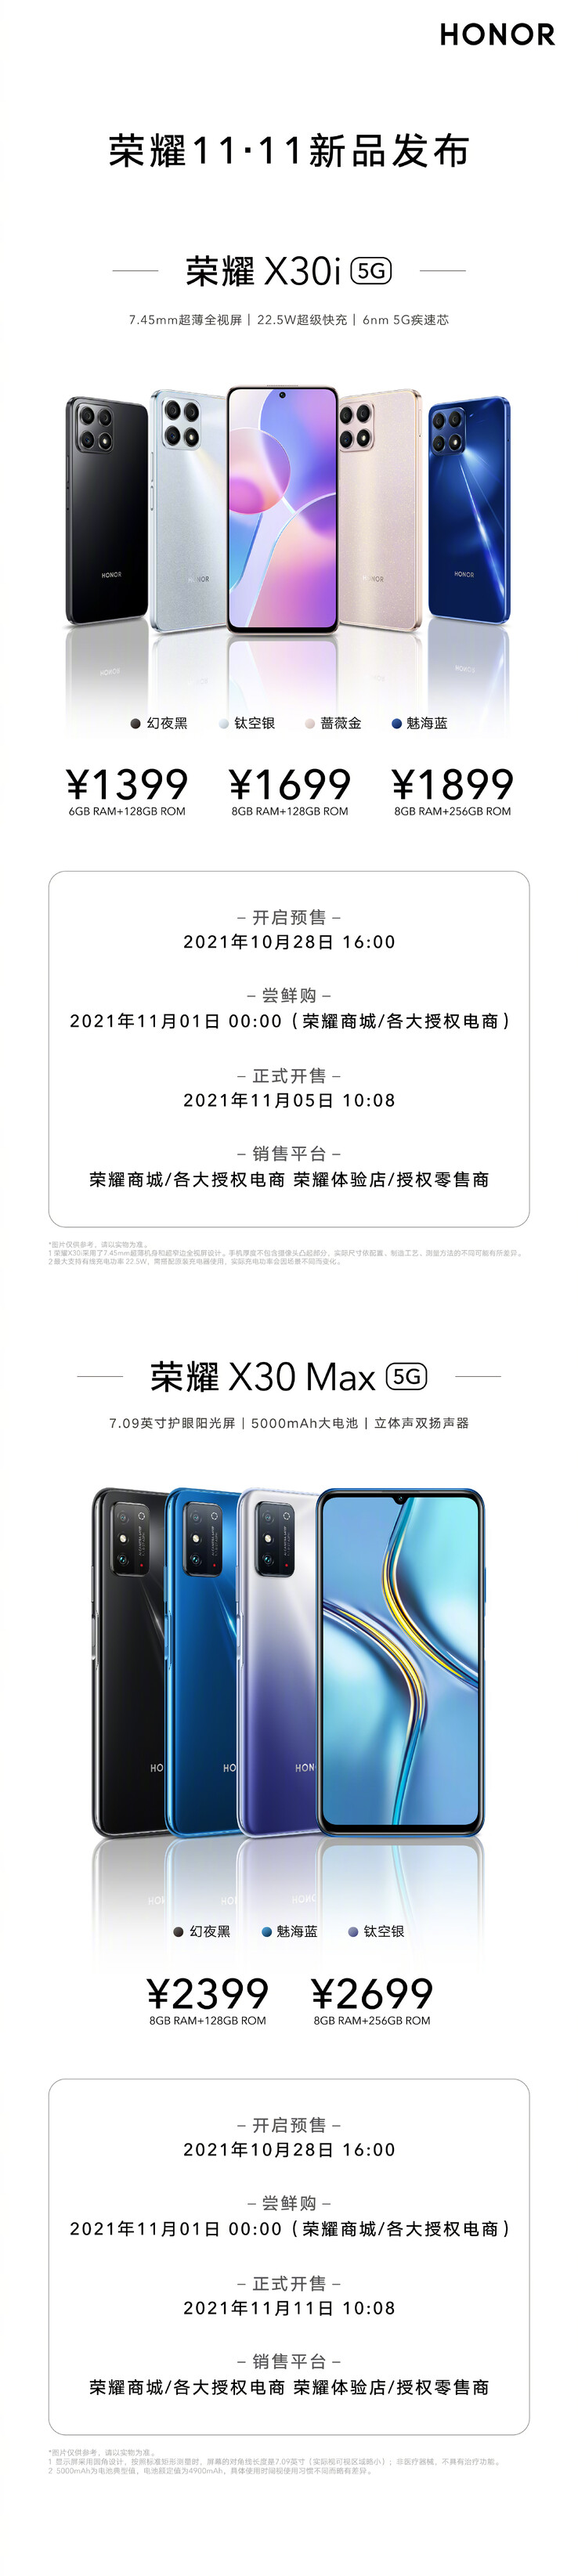 Honor dévoile le X30i et le X30 Max avec 3 coloris chacun. (Source : Honor via Weibo)